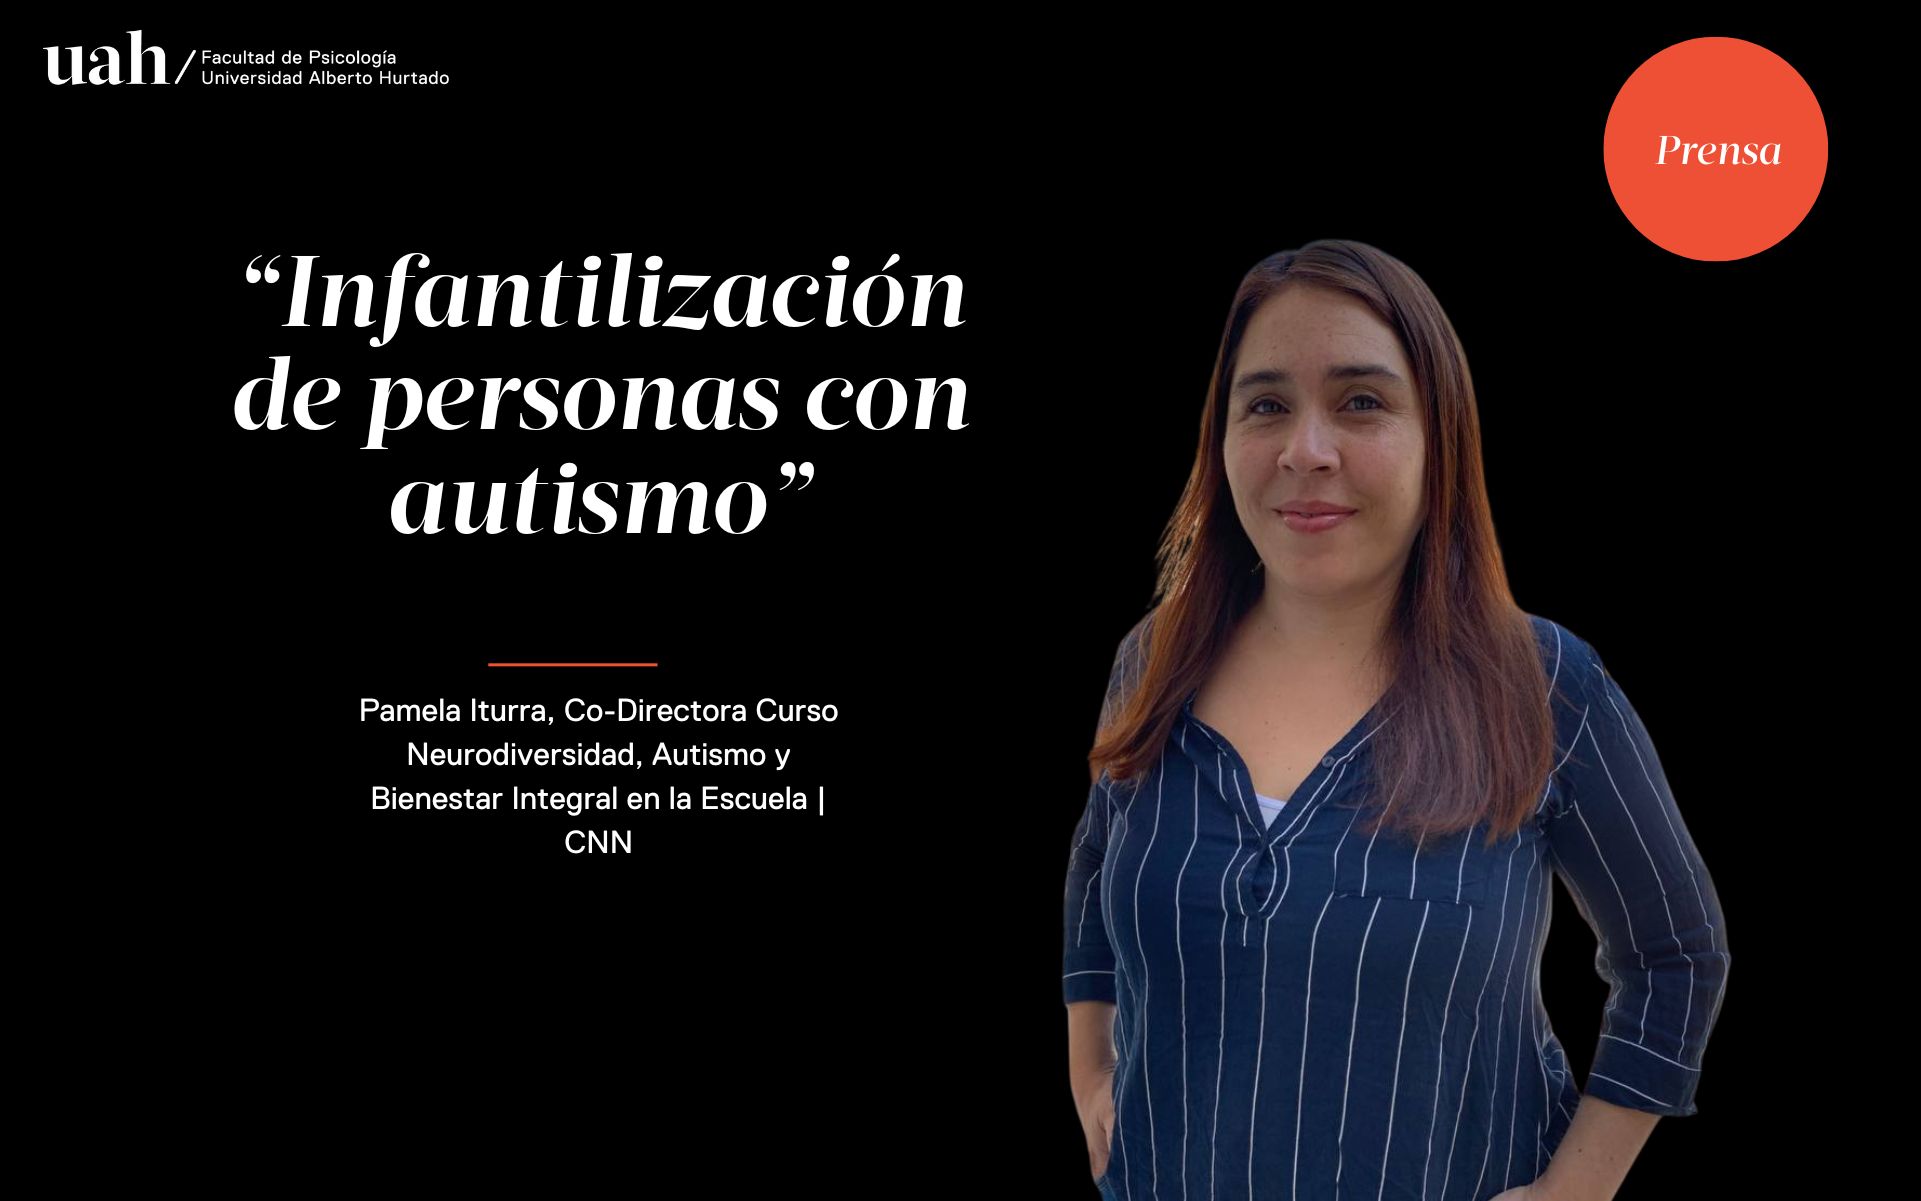 Co-Directora del Curso Neurodiversidad, Autismo y Bienestar Integral en la Escuela habla sobre la Infantilización de personas con autismo en CNN